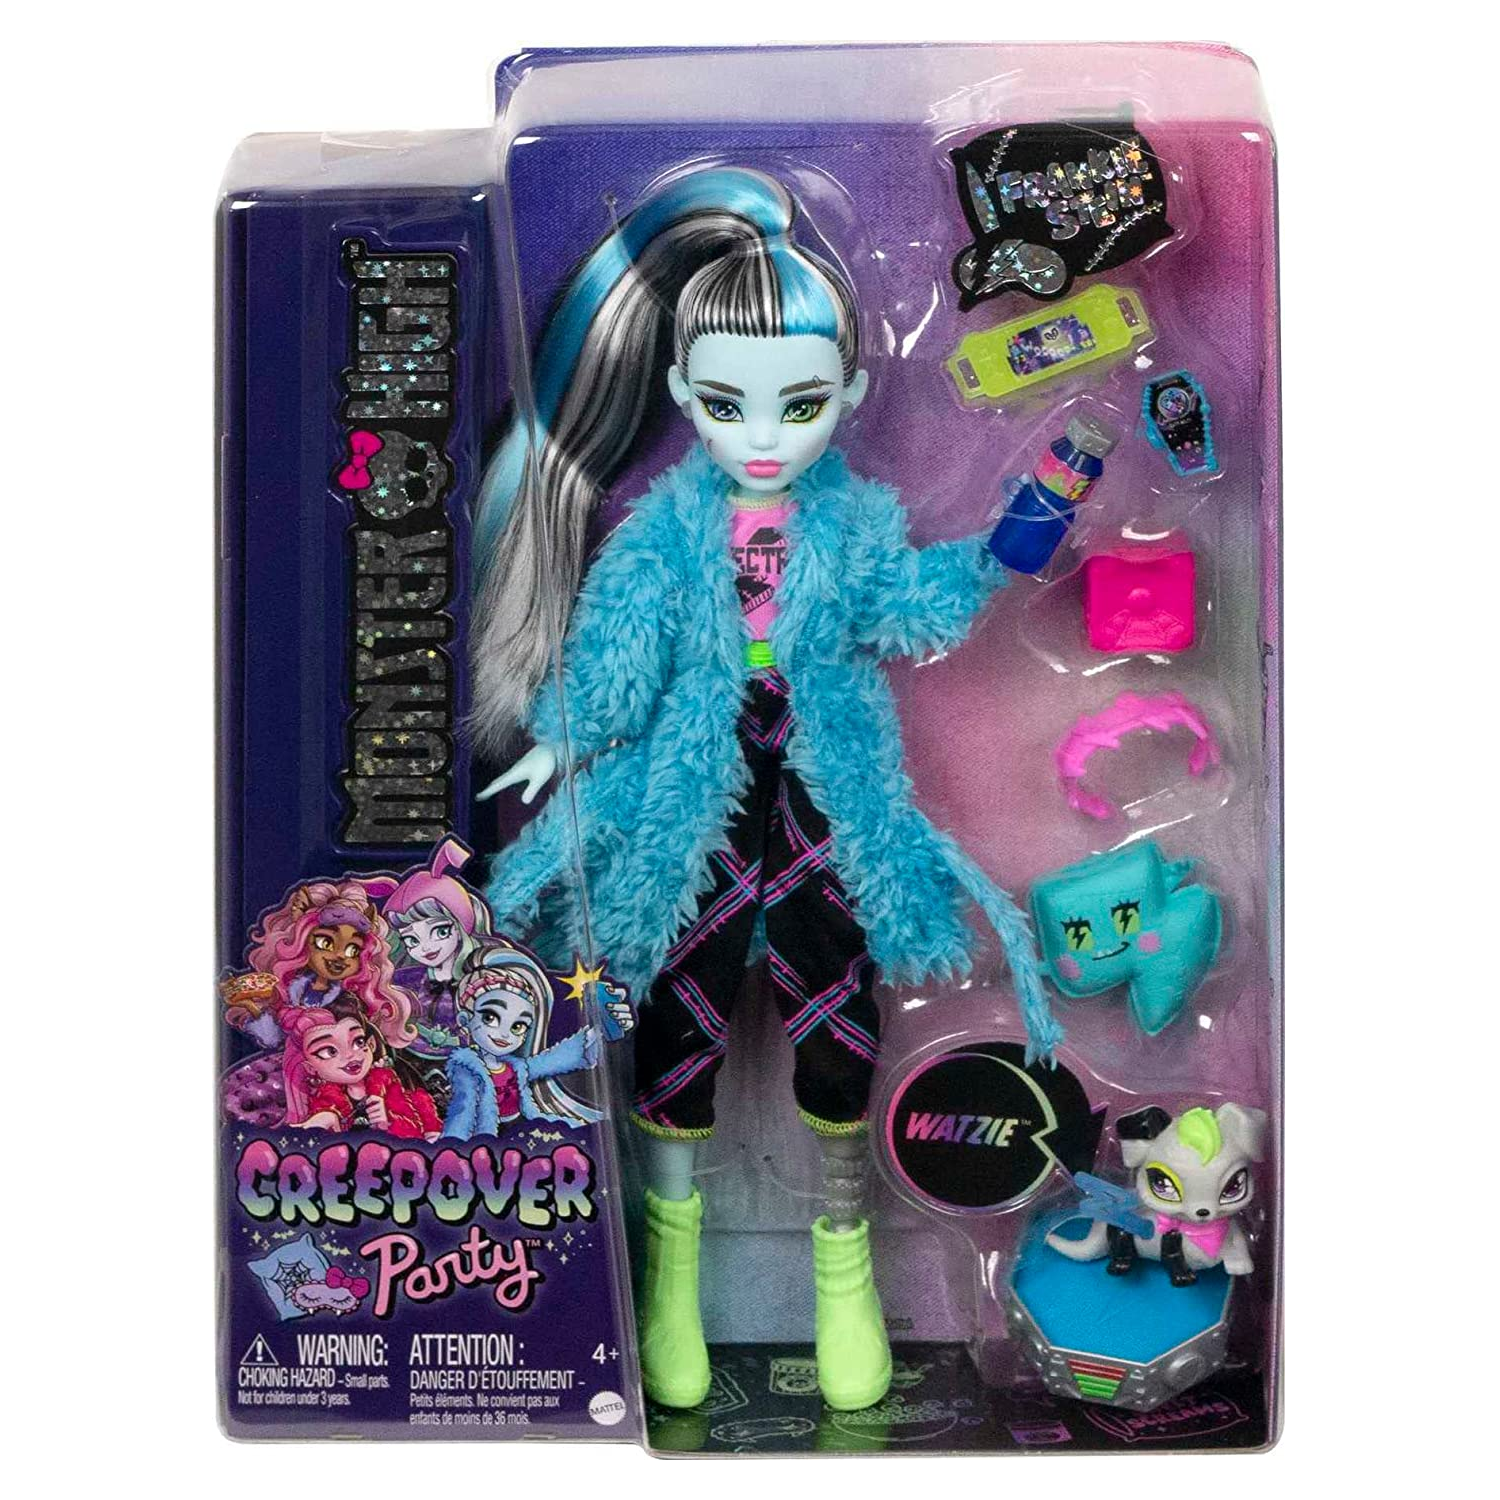 Monster High: confira os melhores jogos das bonecas monstrinhas